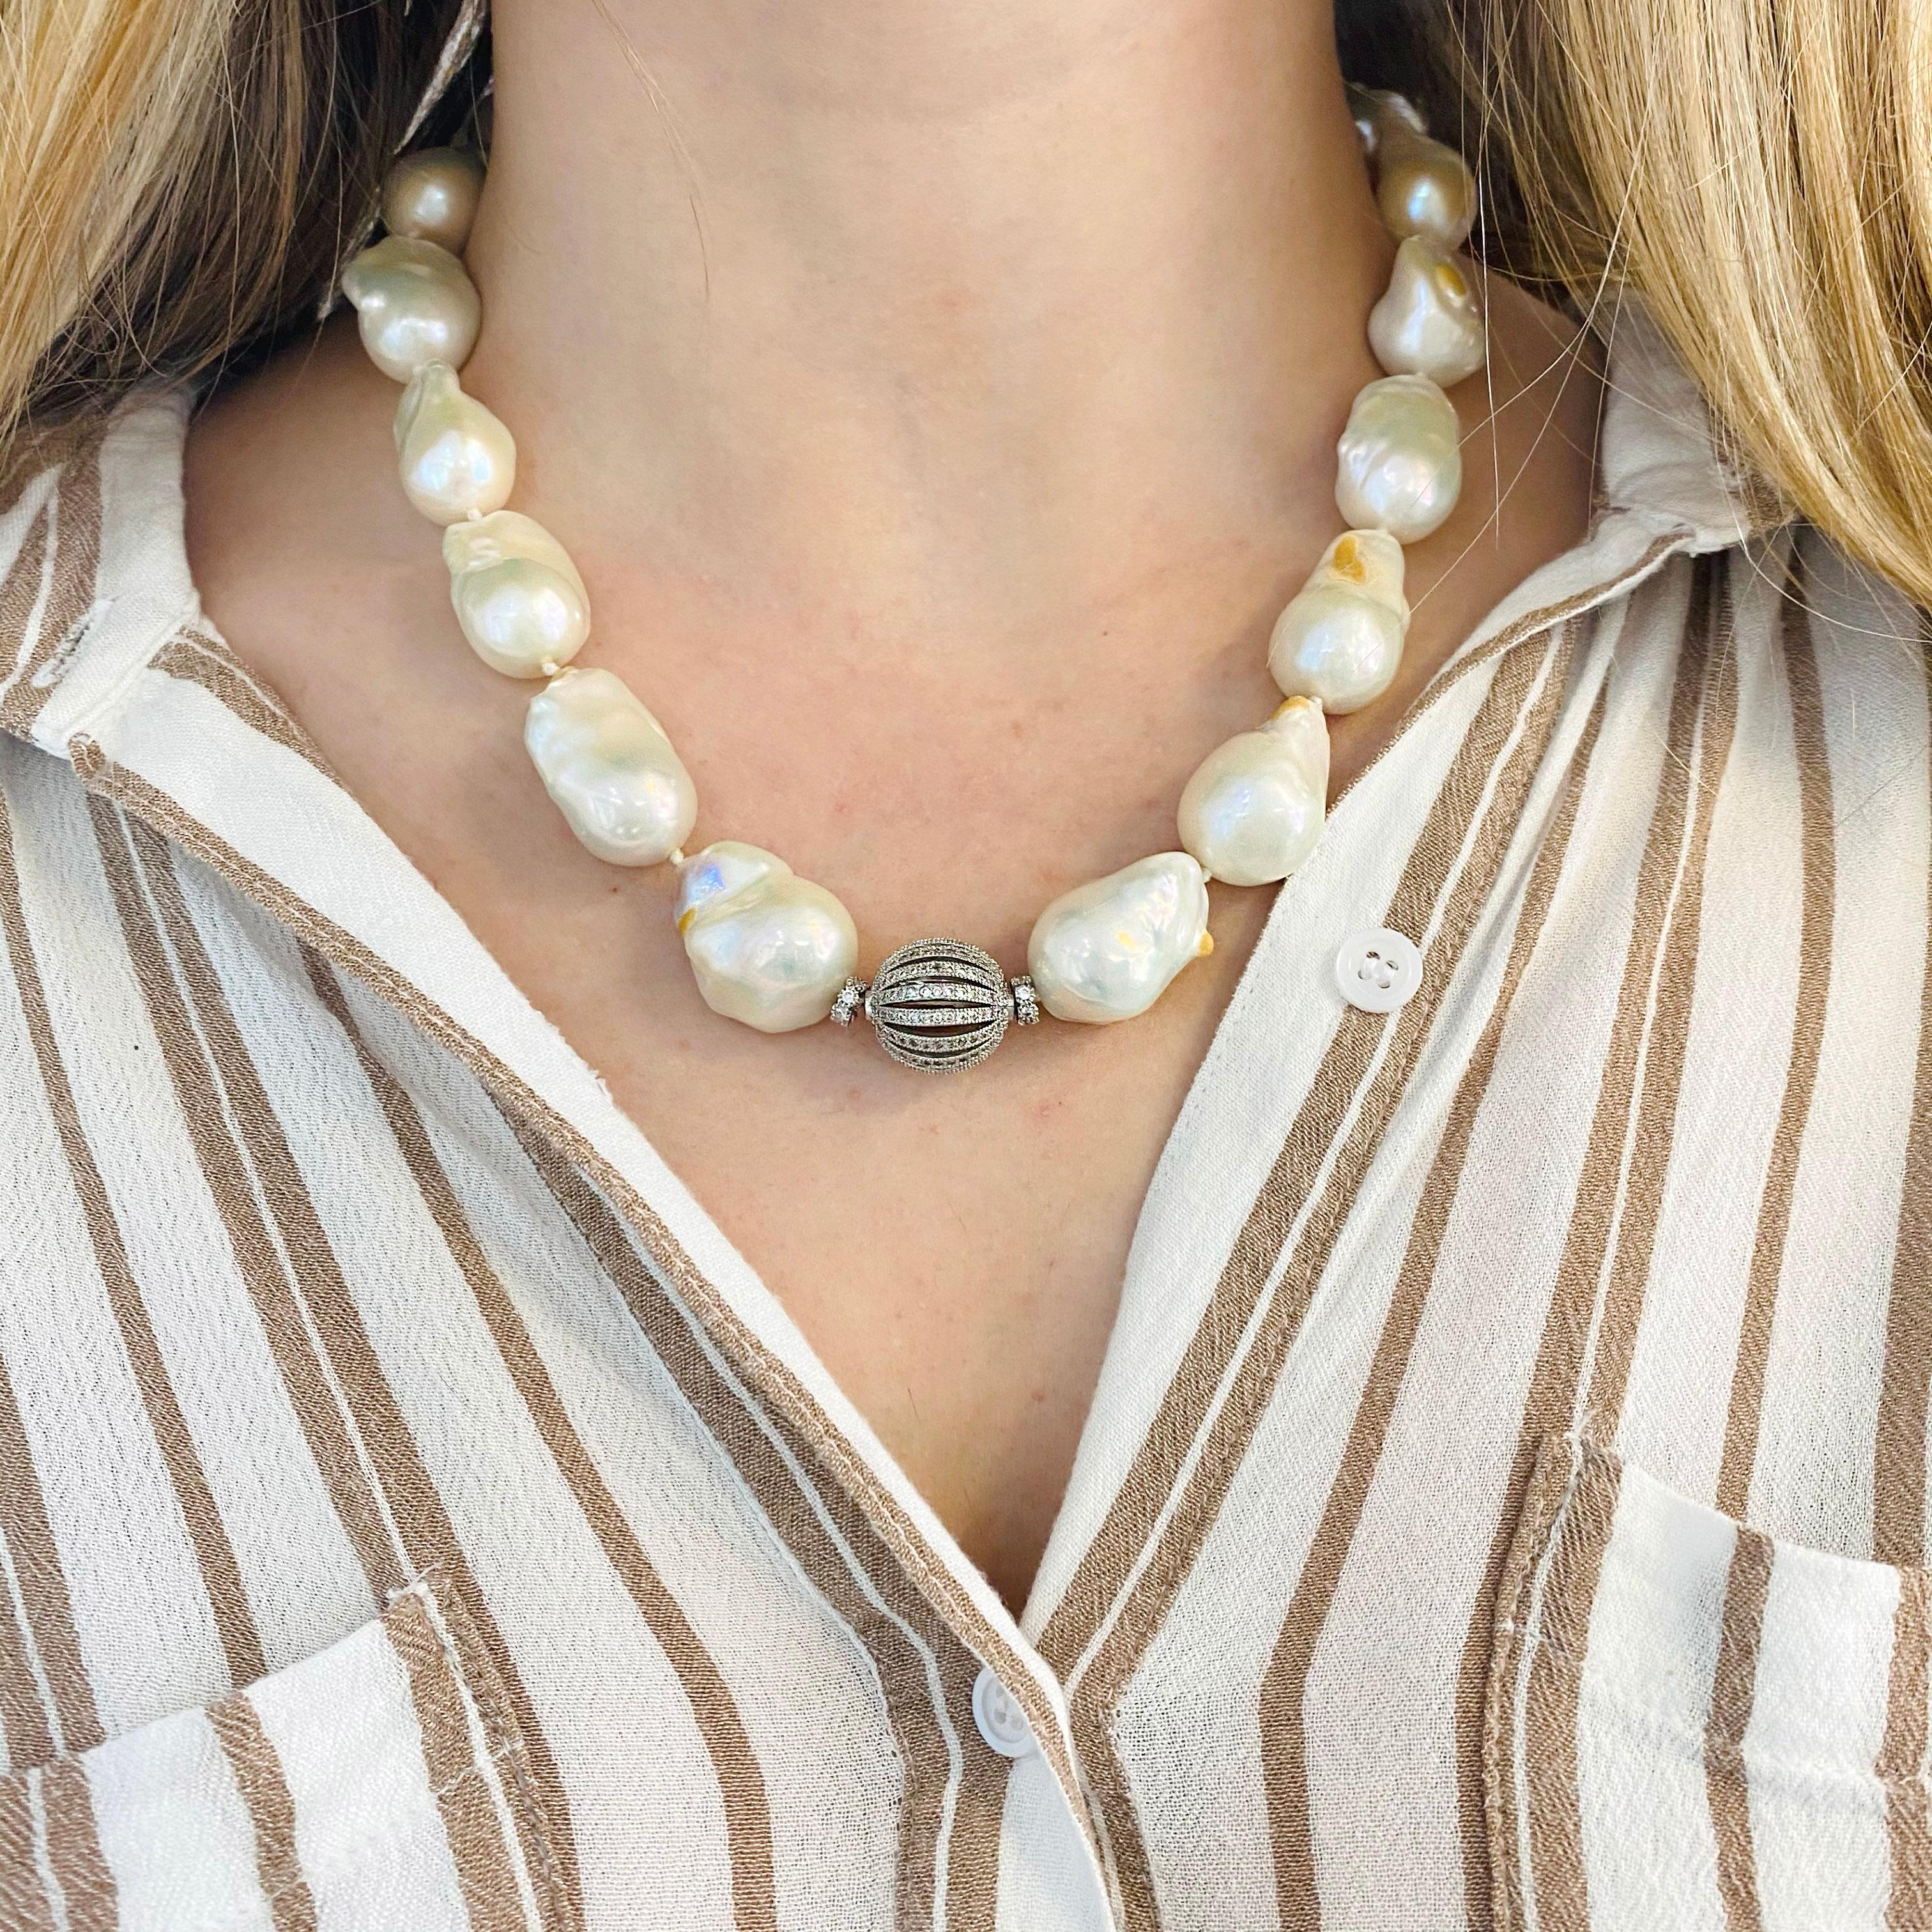 Diese barocken Tahiti-Perlen sind weiß in der Farbe und verknotet zwischen jedem mit einem Sterling Silber verstellbare Kette und Verschluss.  Die Perlen sind 20 x 12 Millimeter groß und machen ein tolles Statement!  Jede Perle ist einzigartig in